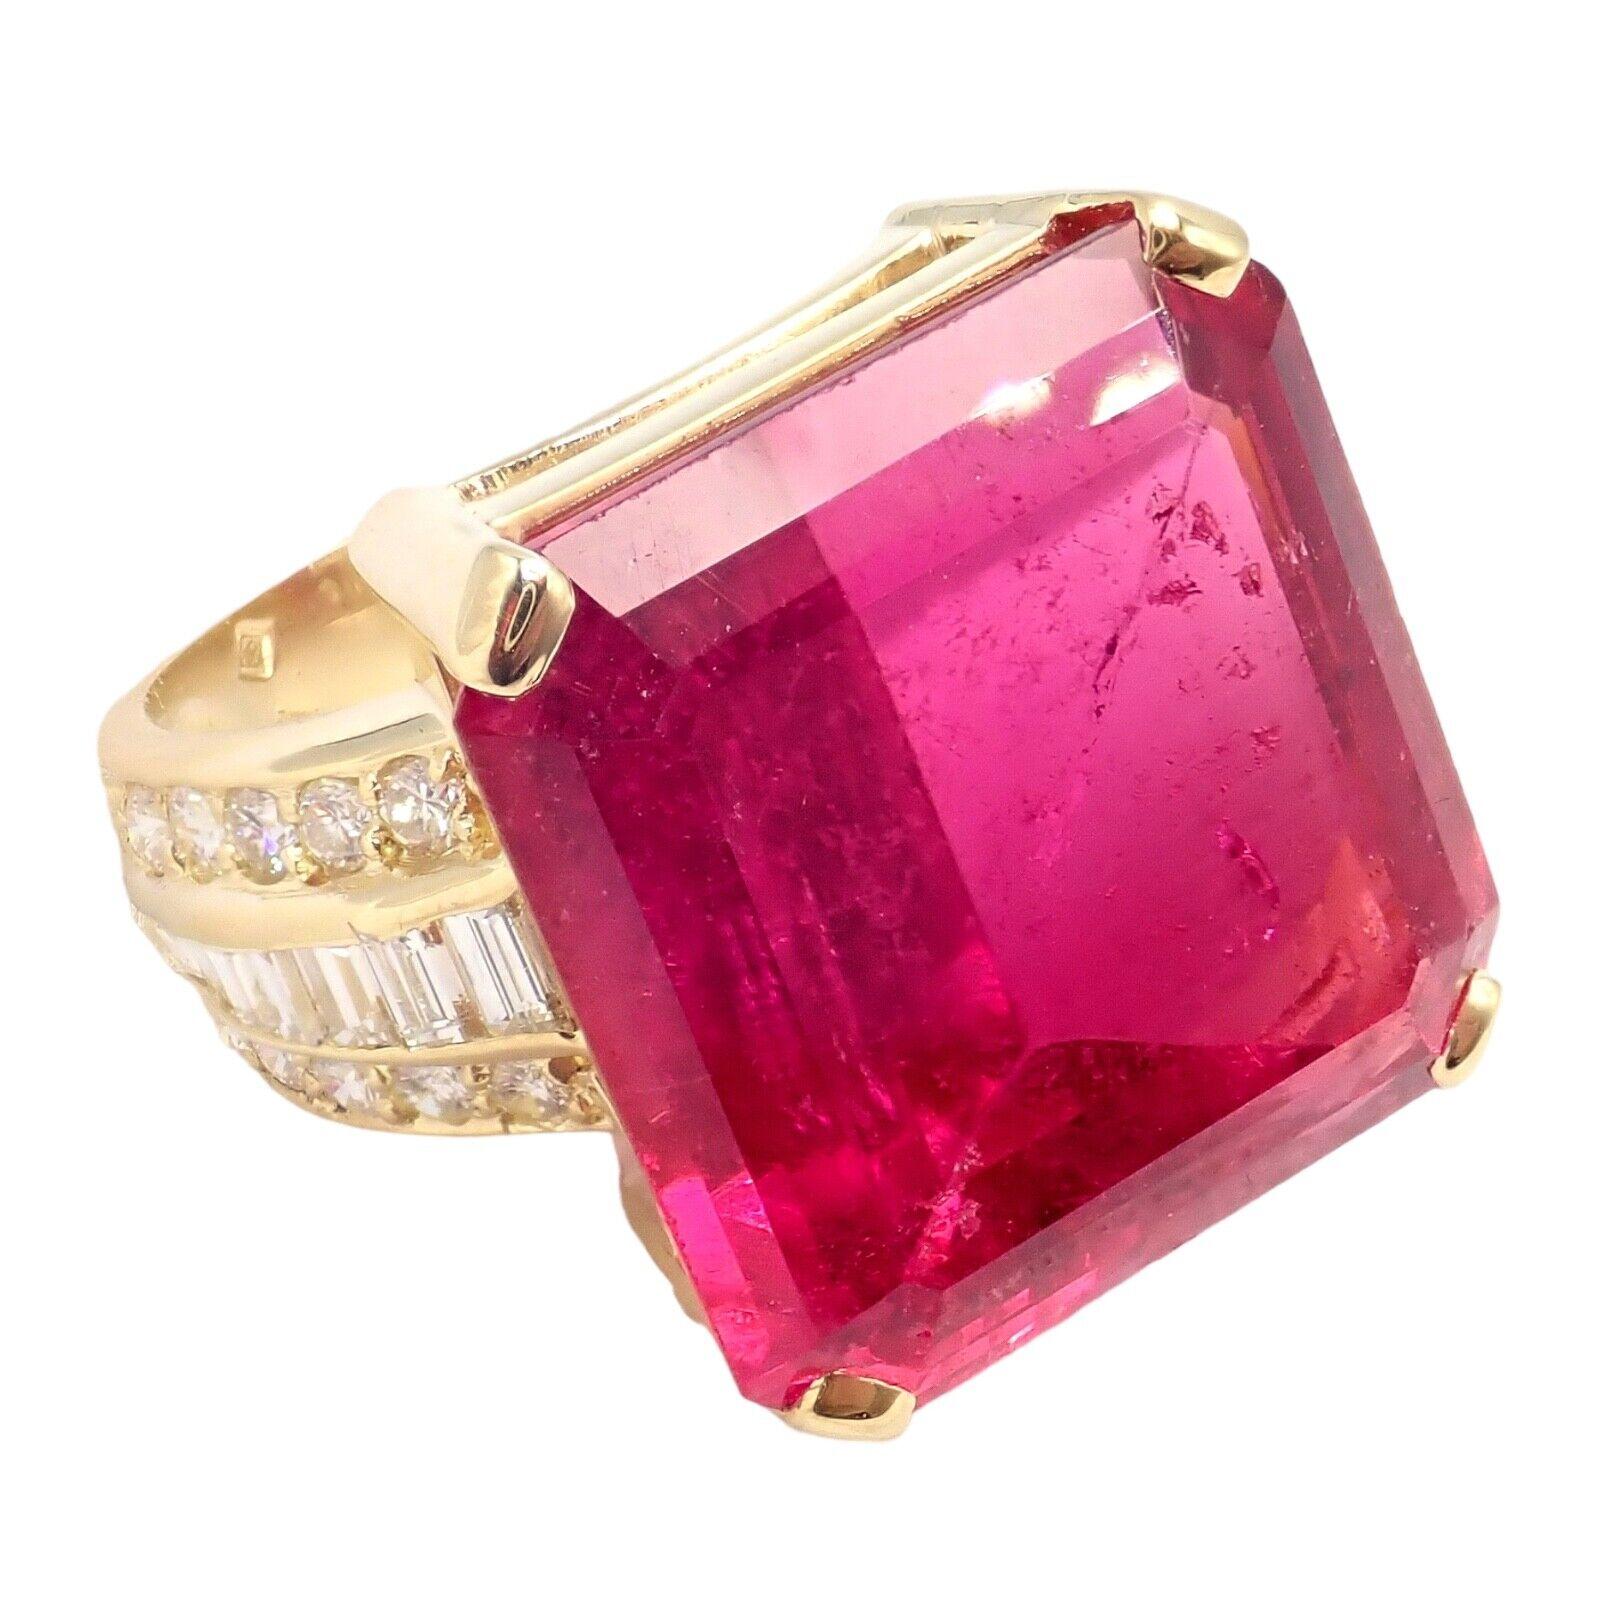 H. Stern Diamond Large Pink Tourmaline Yellow Gold Statement Ring 6